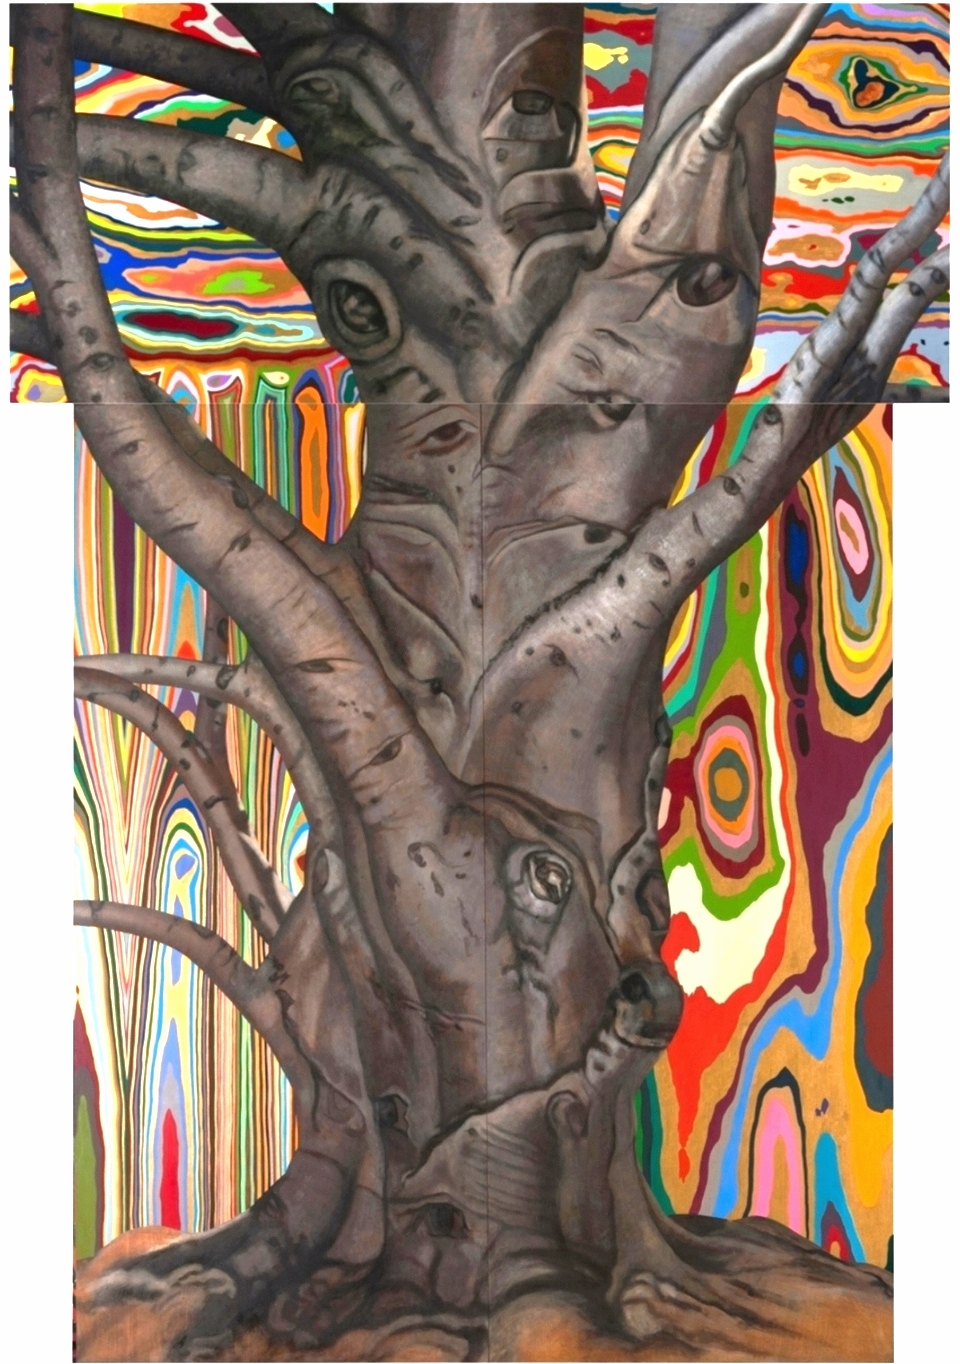 Brahma. 1993-97. Oil on wood. 120" x 84".